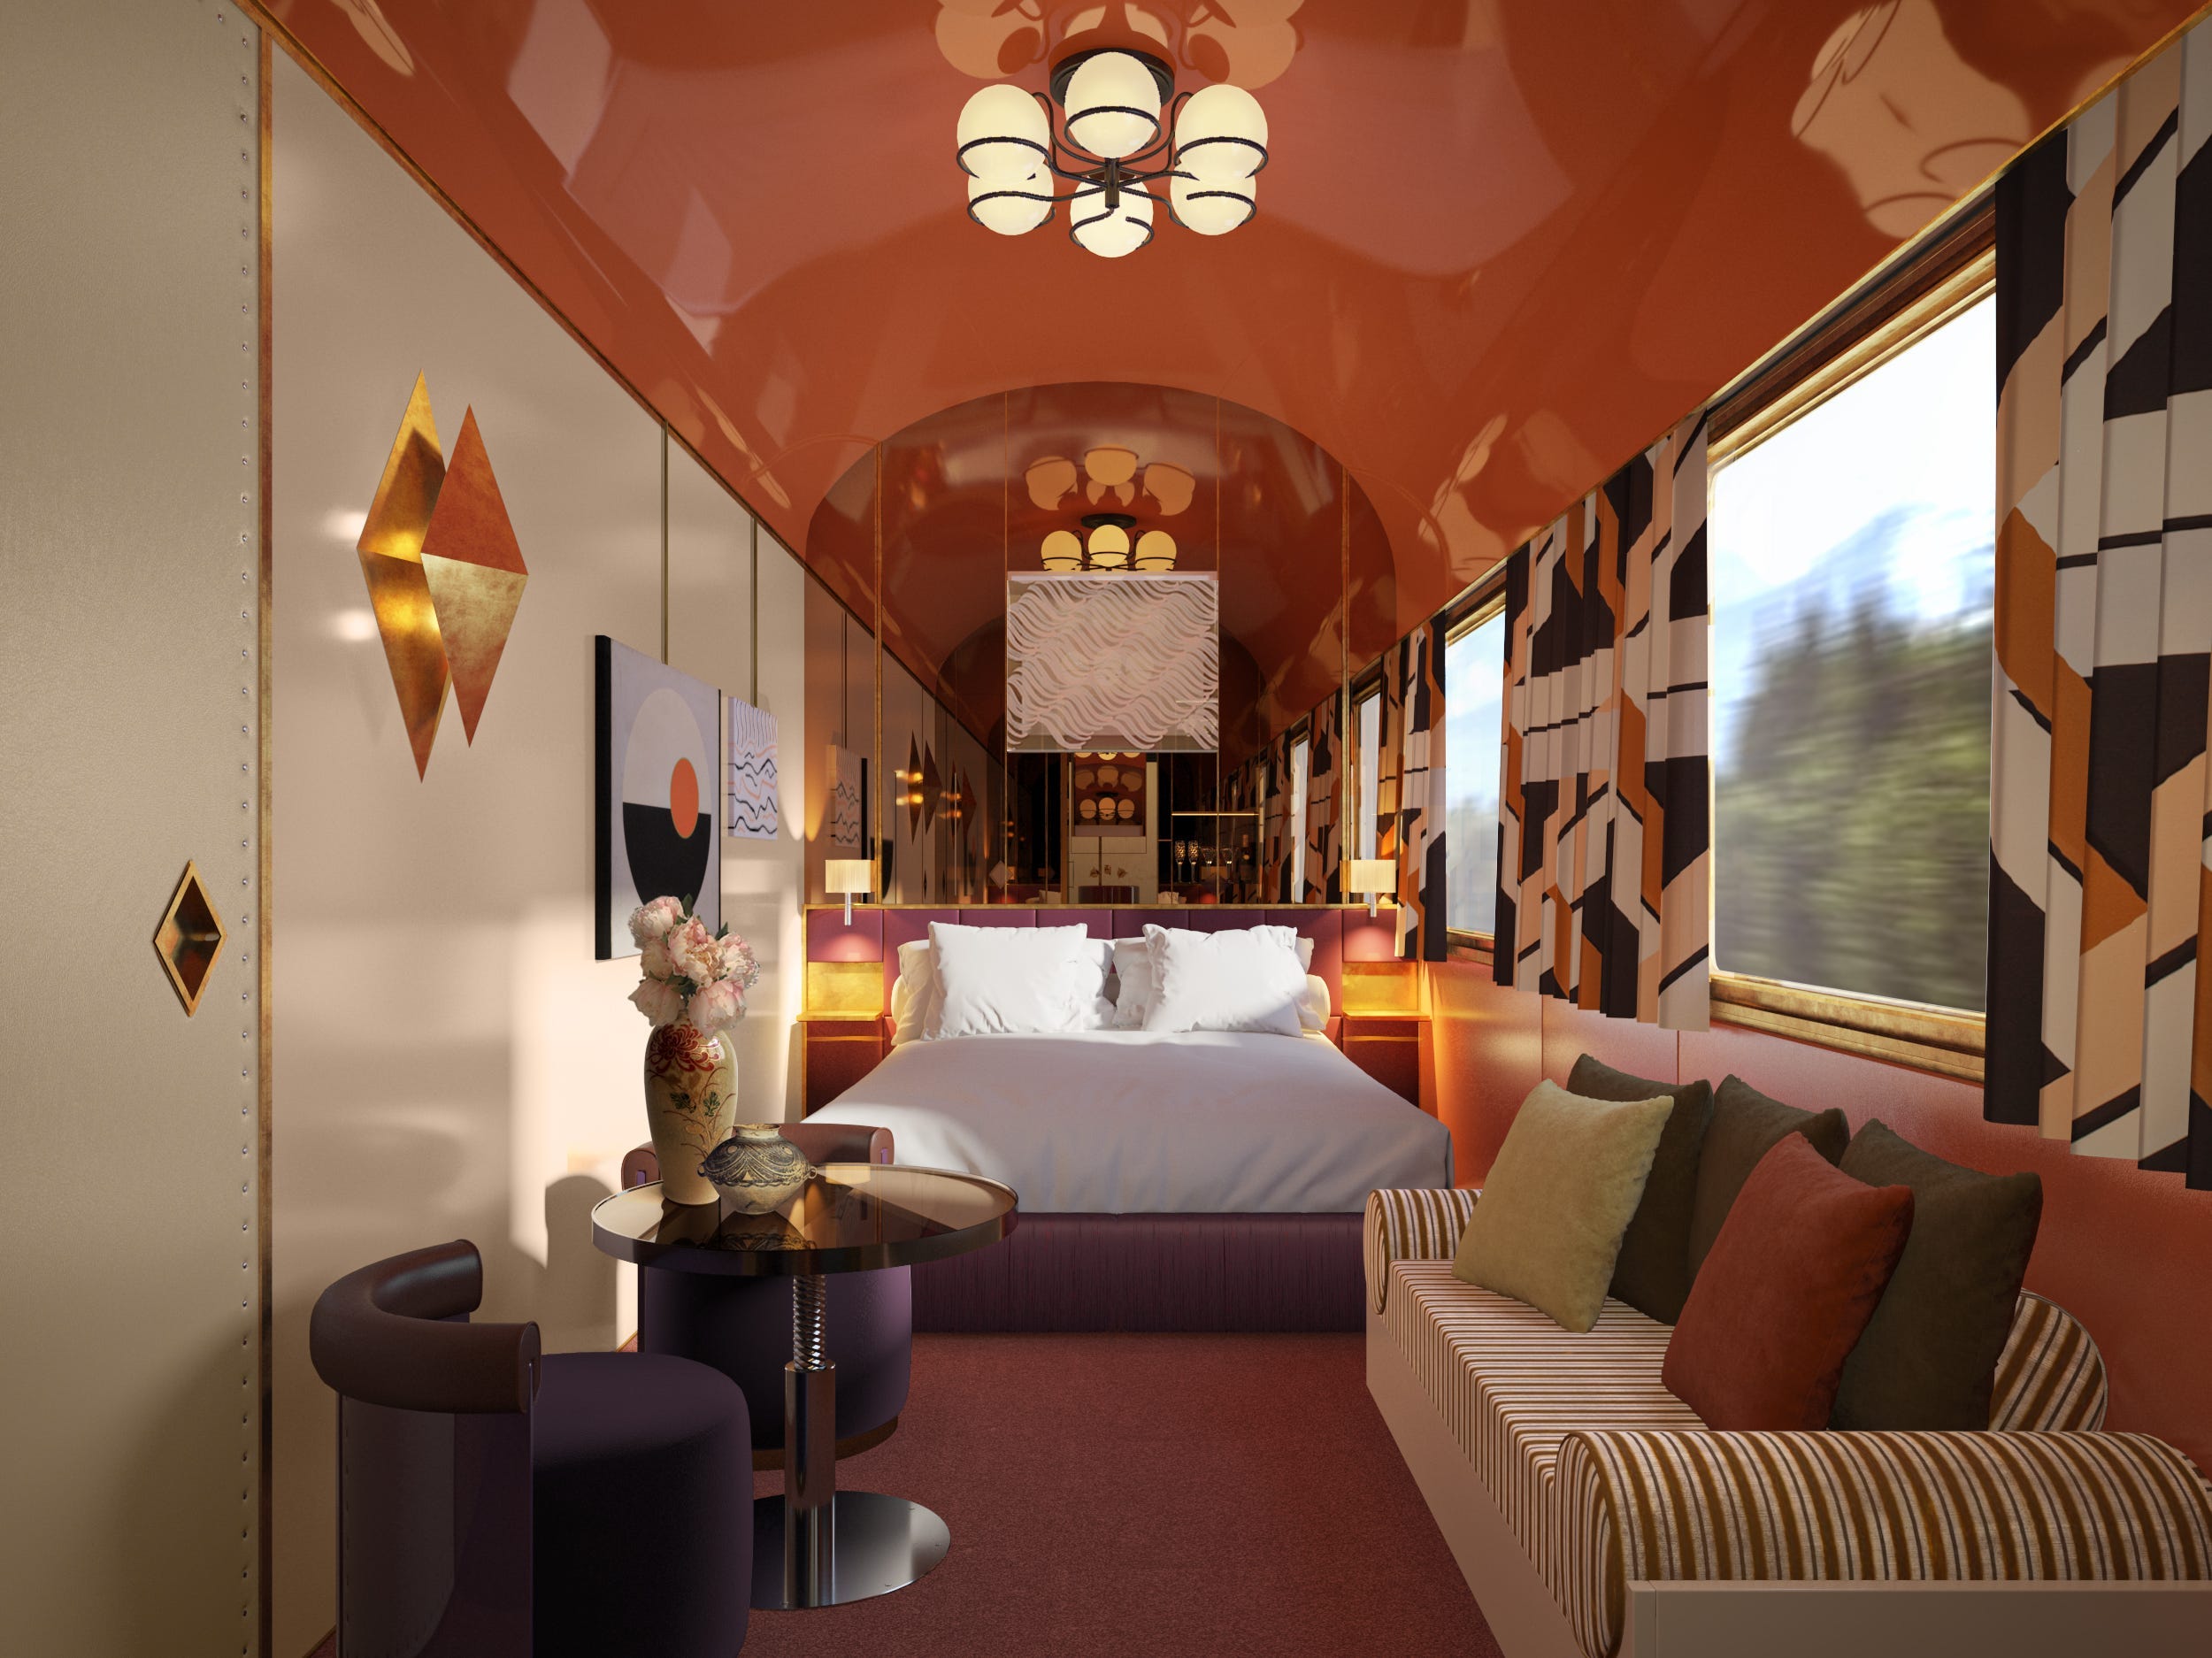 Il treno dispone di suite doppie con prezzi che vanno da € 6.600 a € 25.000 a notte.